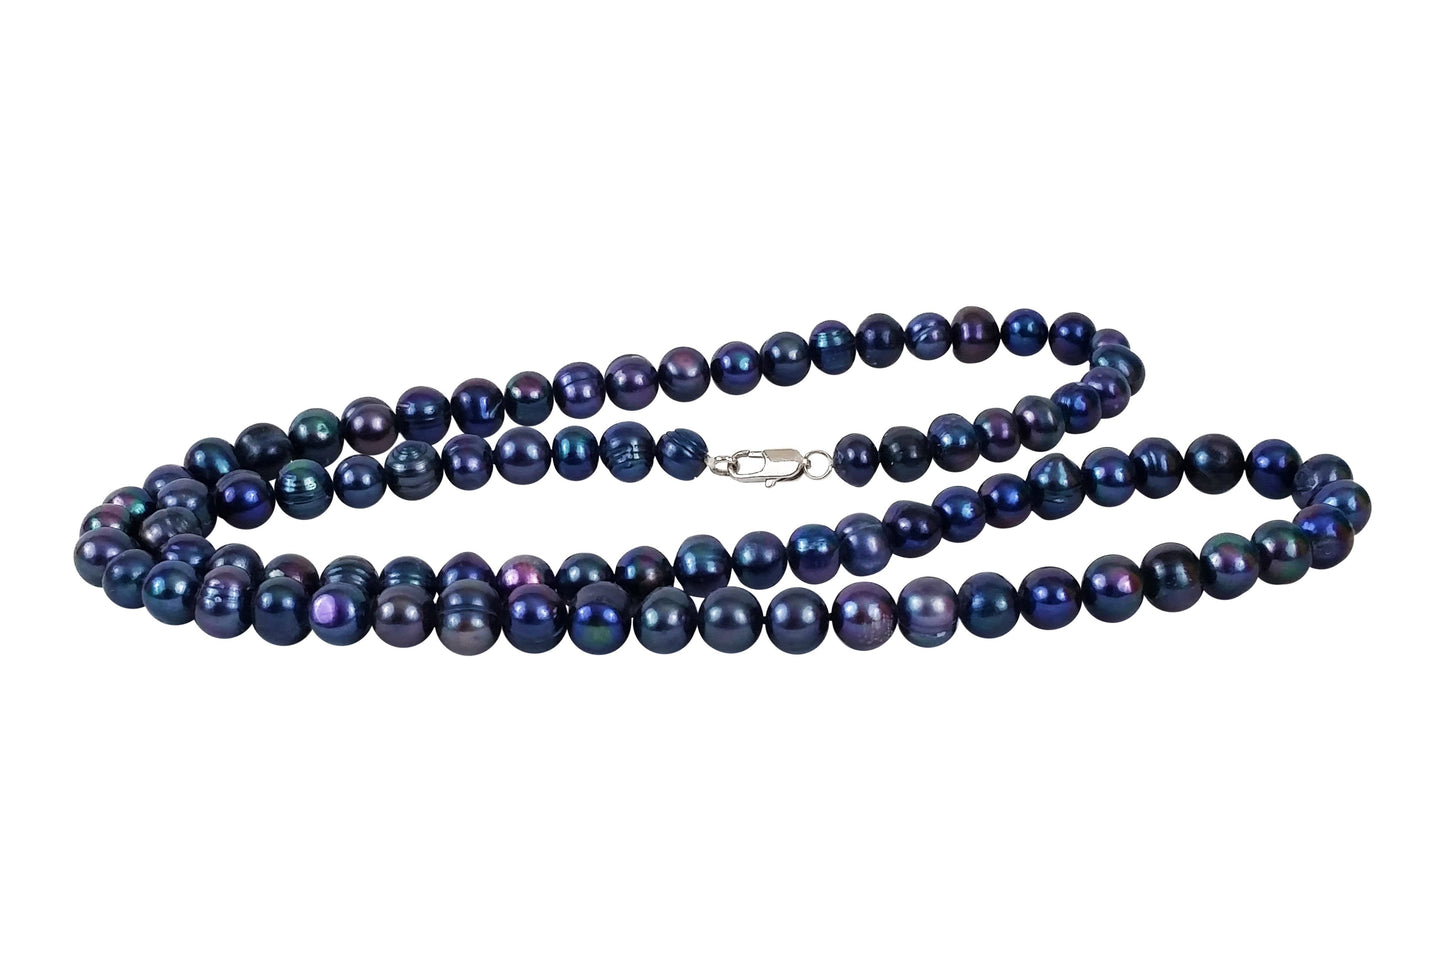 Tarifa - Collar de perlas de agua dulce negras